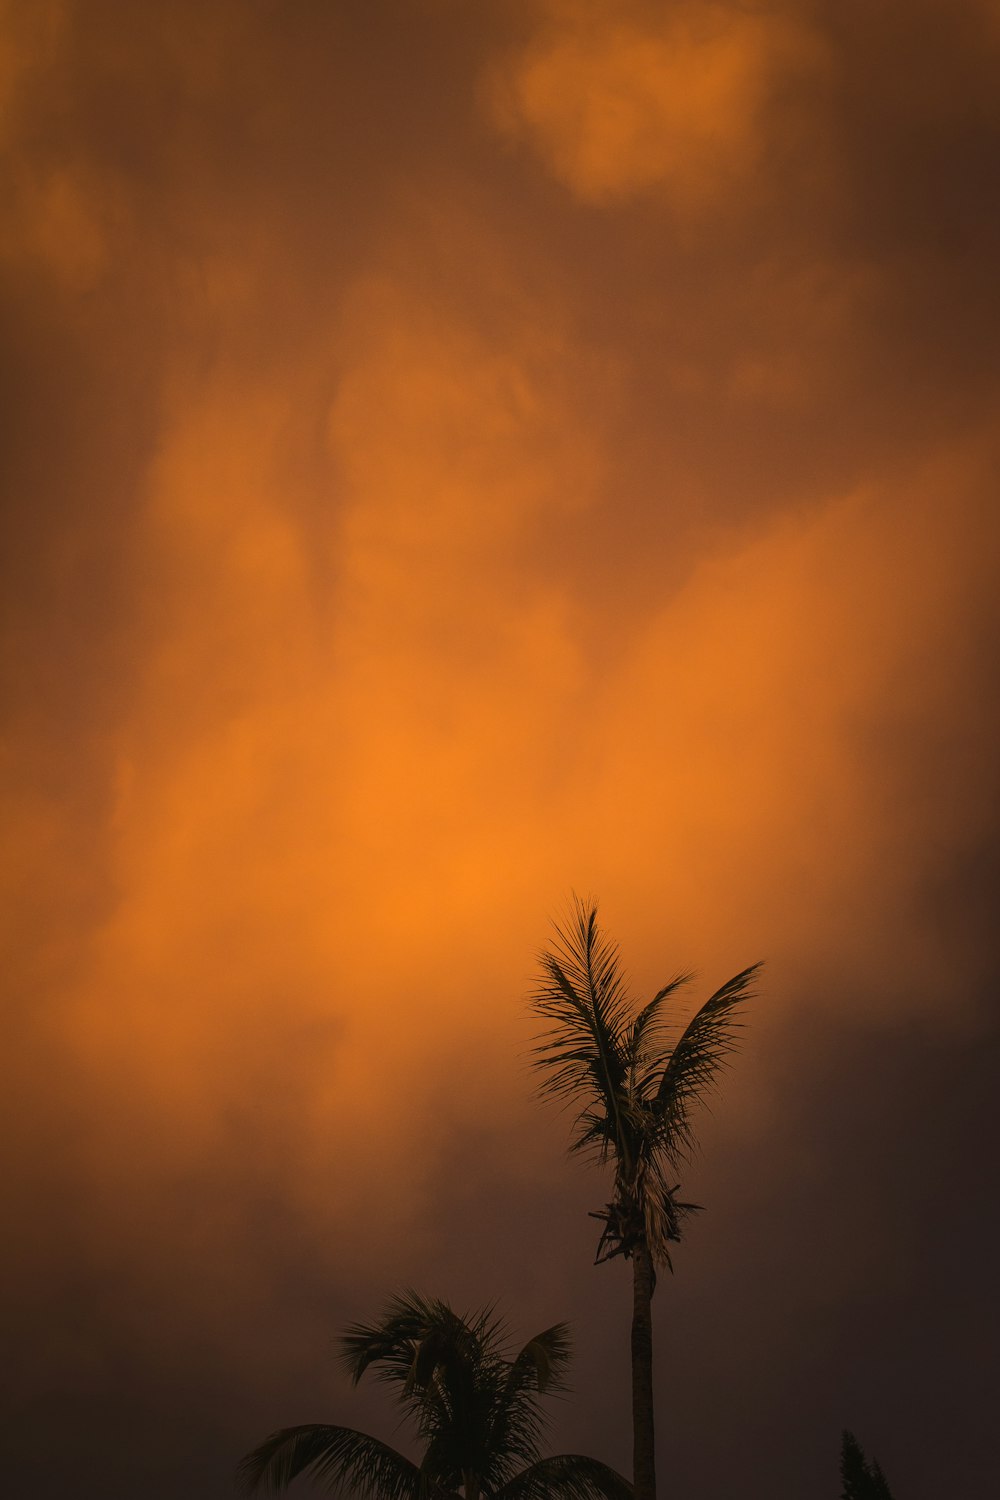 Un couple de palmiers sous un ciel nuageux